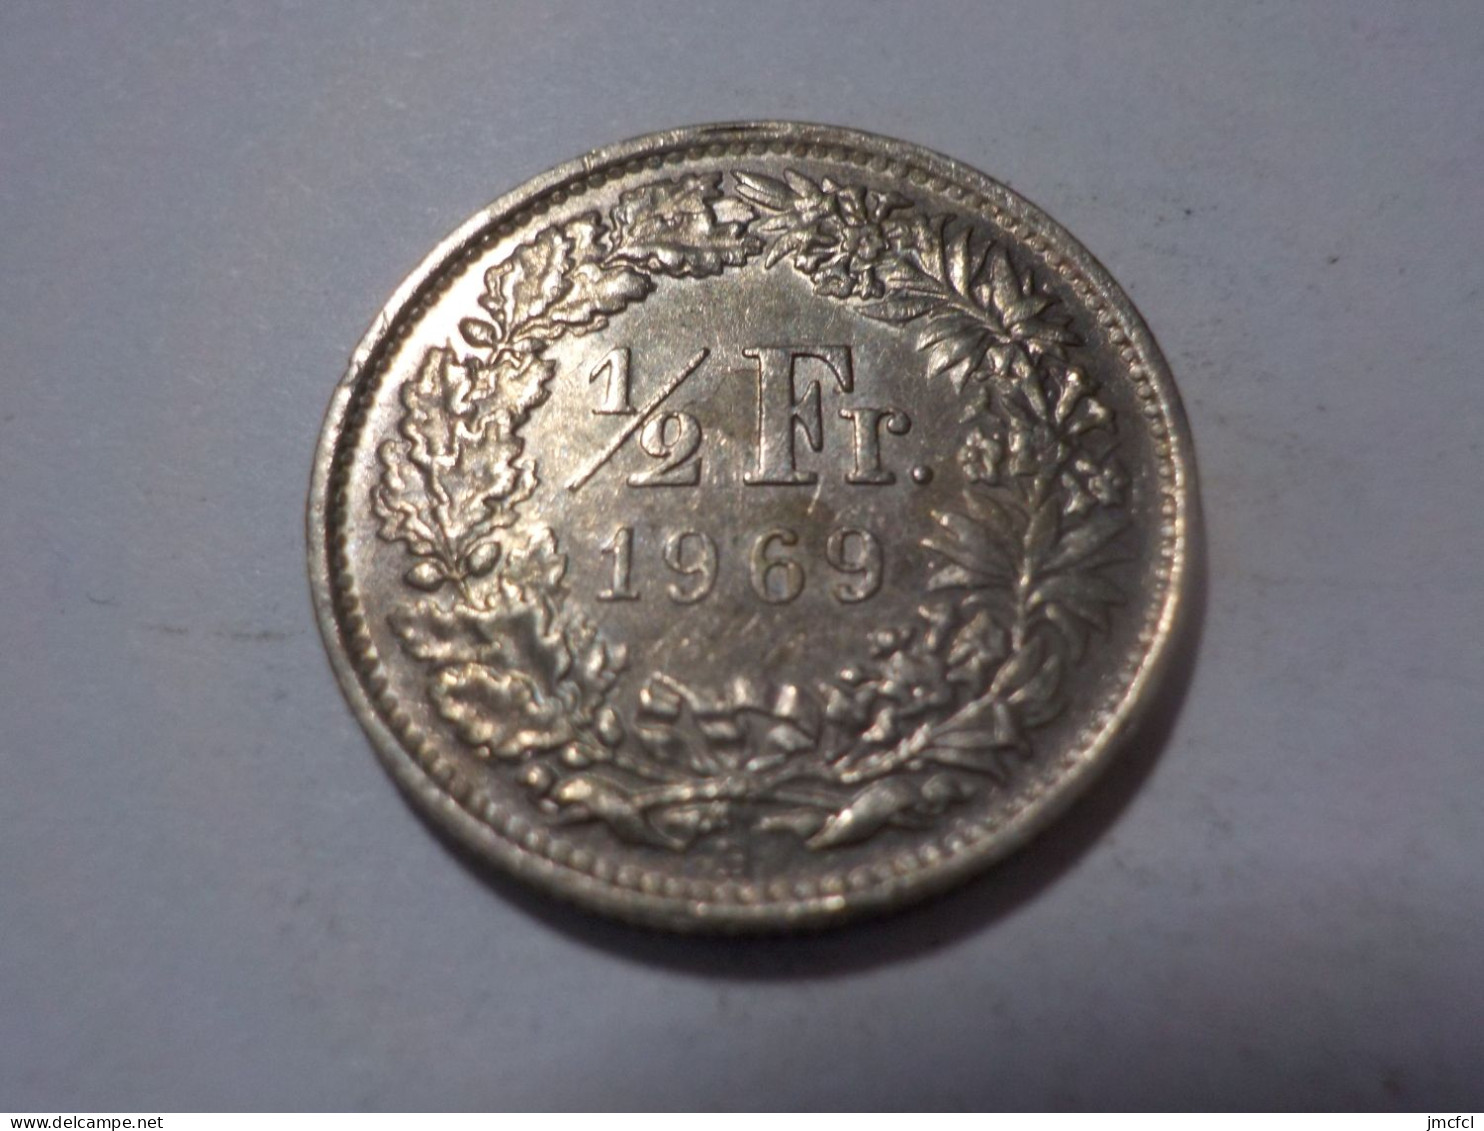 SUISSE  1/2  Franc 1969 - 1/2 Franken